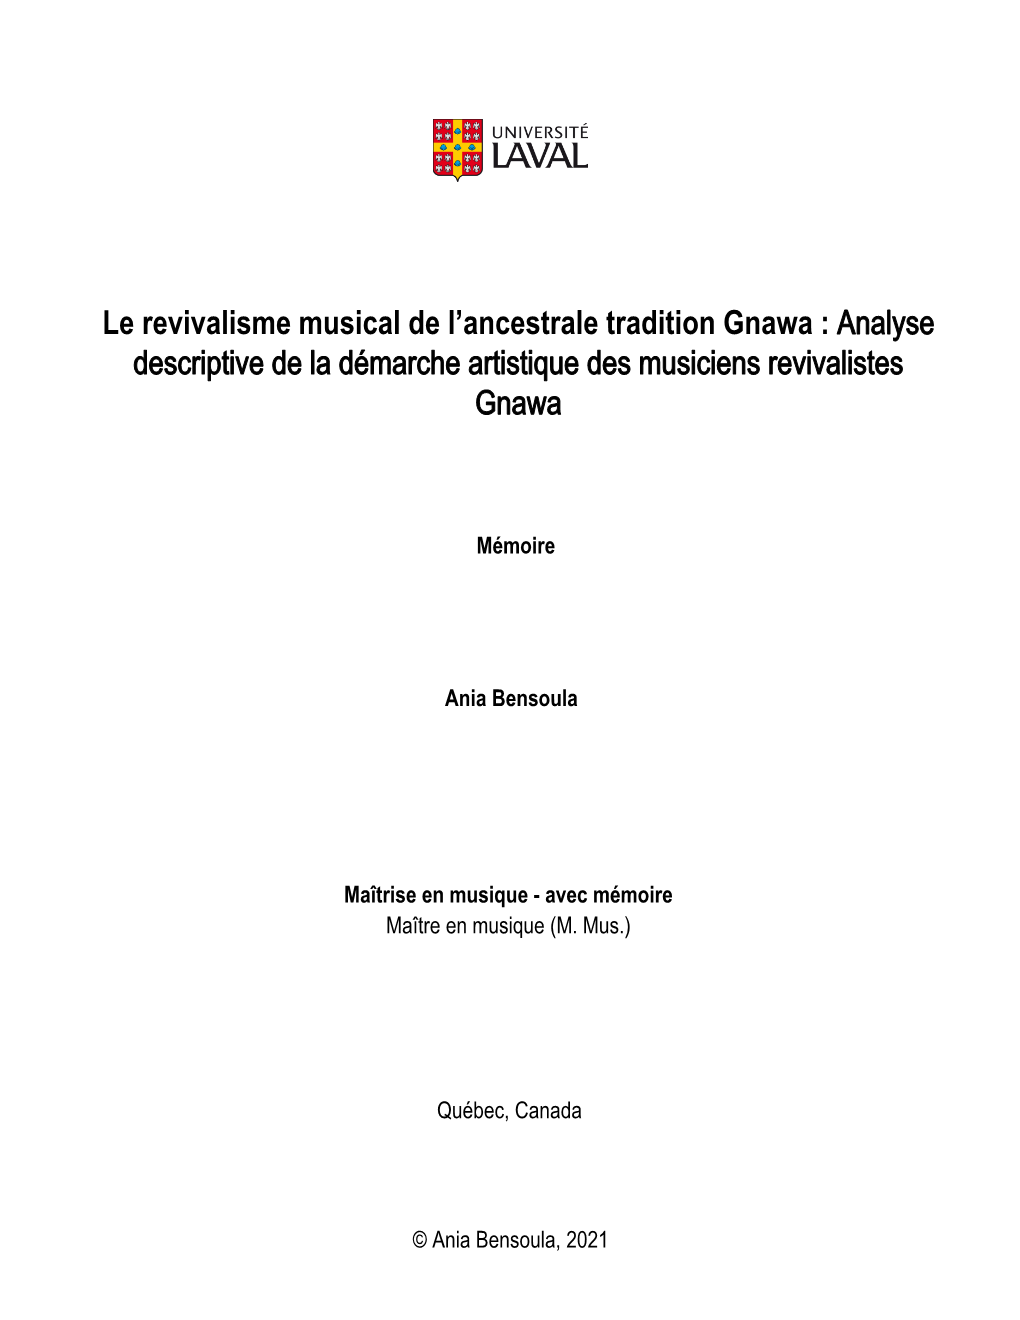 Le Revivalisme Musical De L'ancestrale Tradition Gnawa